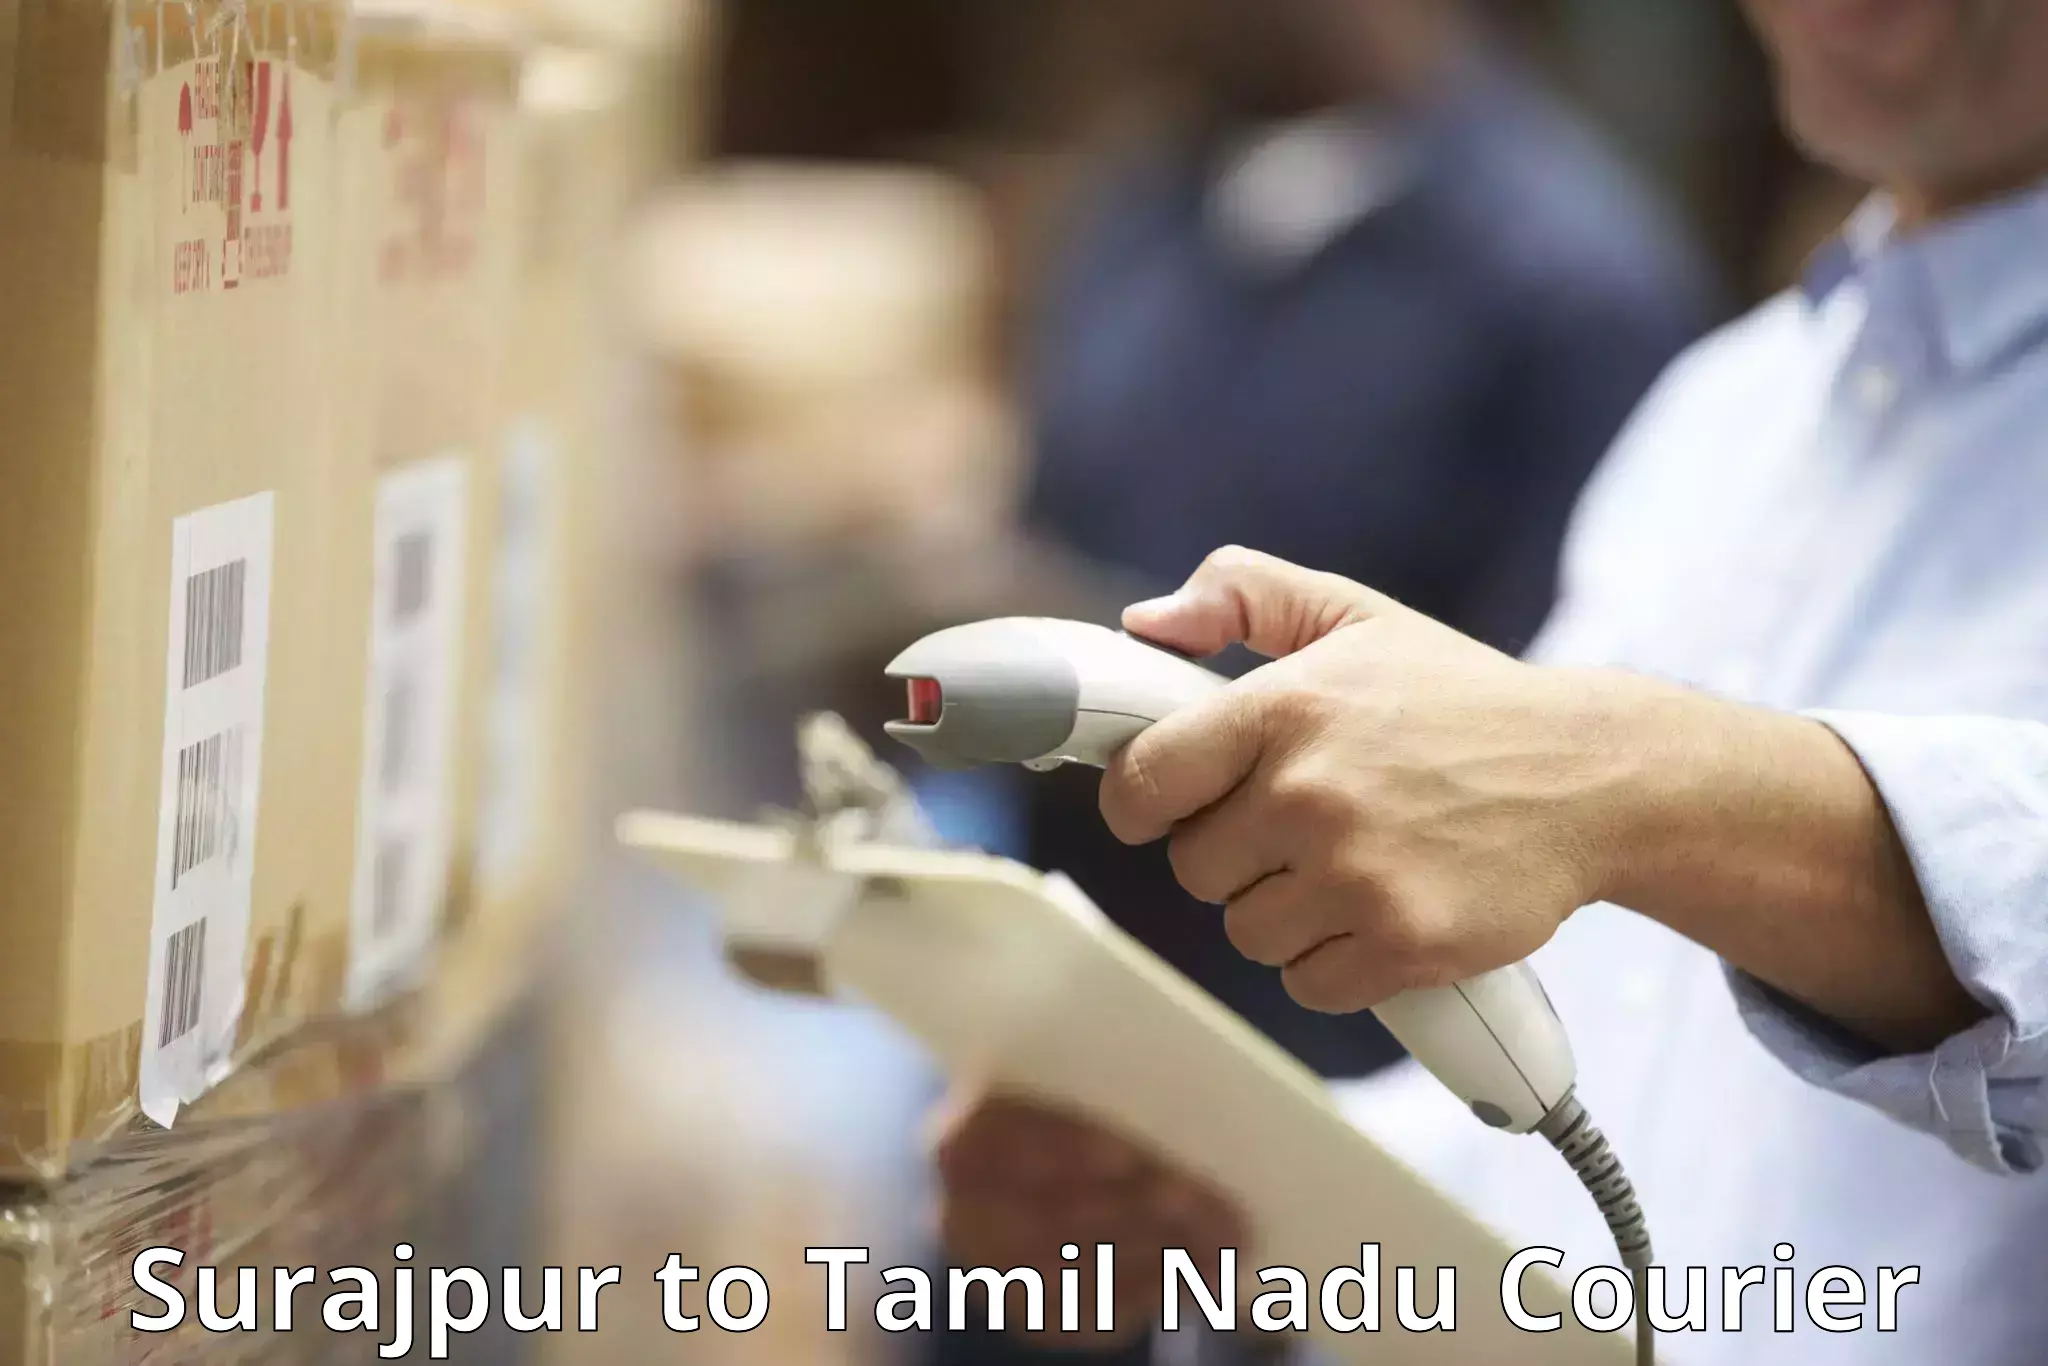 Baggage transport scheduler Surajpur to Tamil Nadu